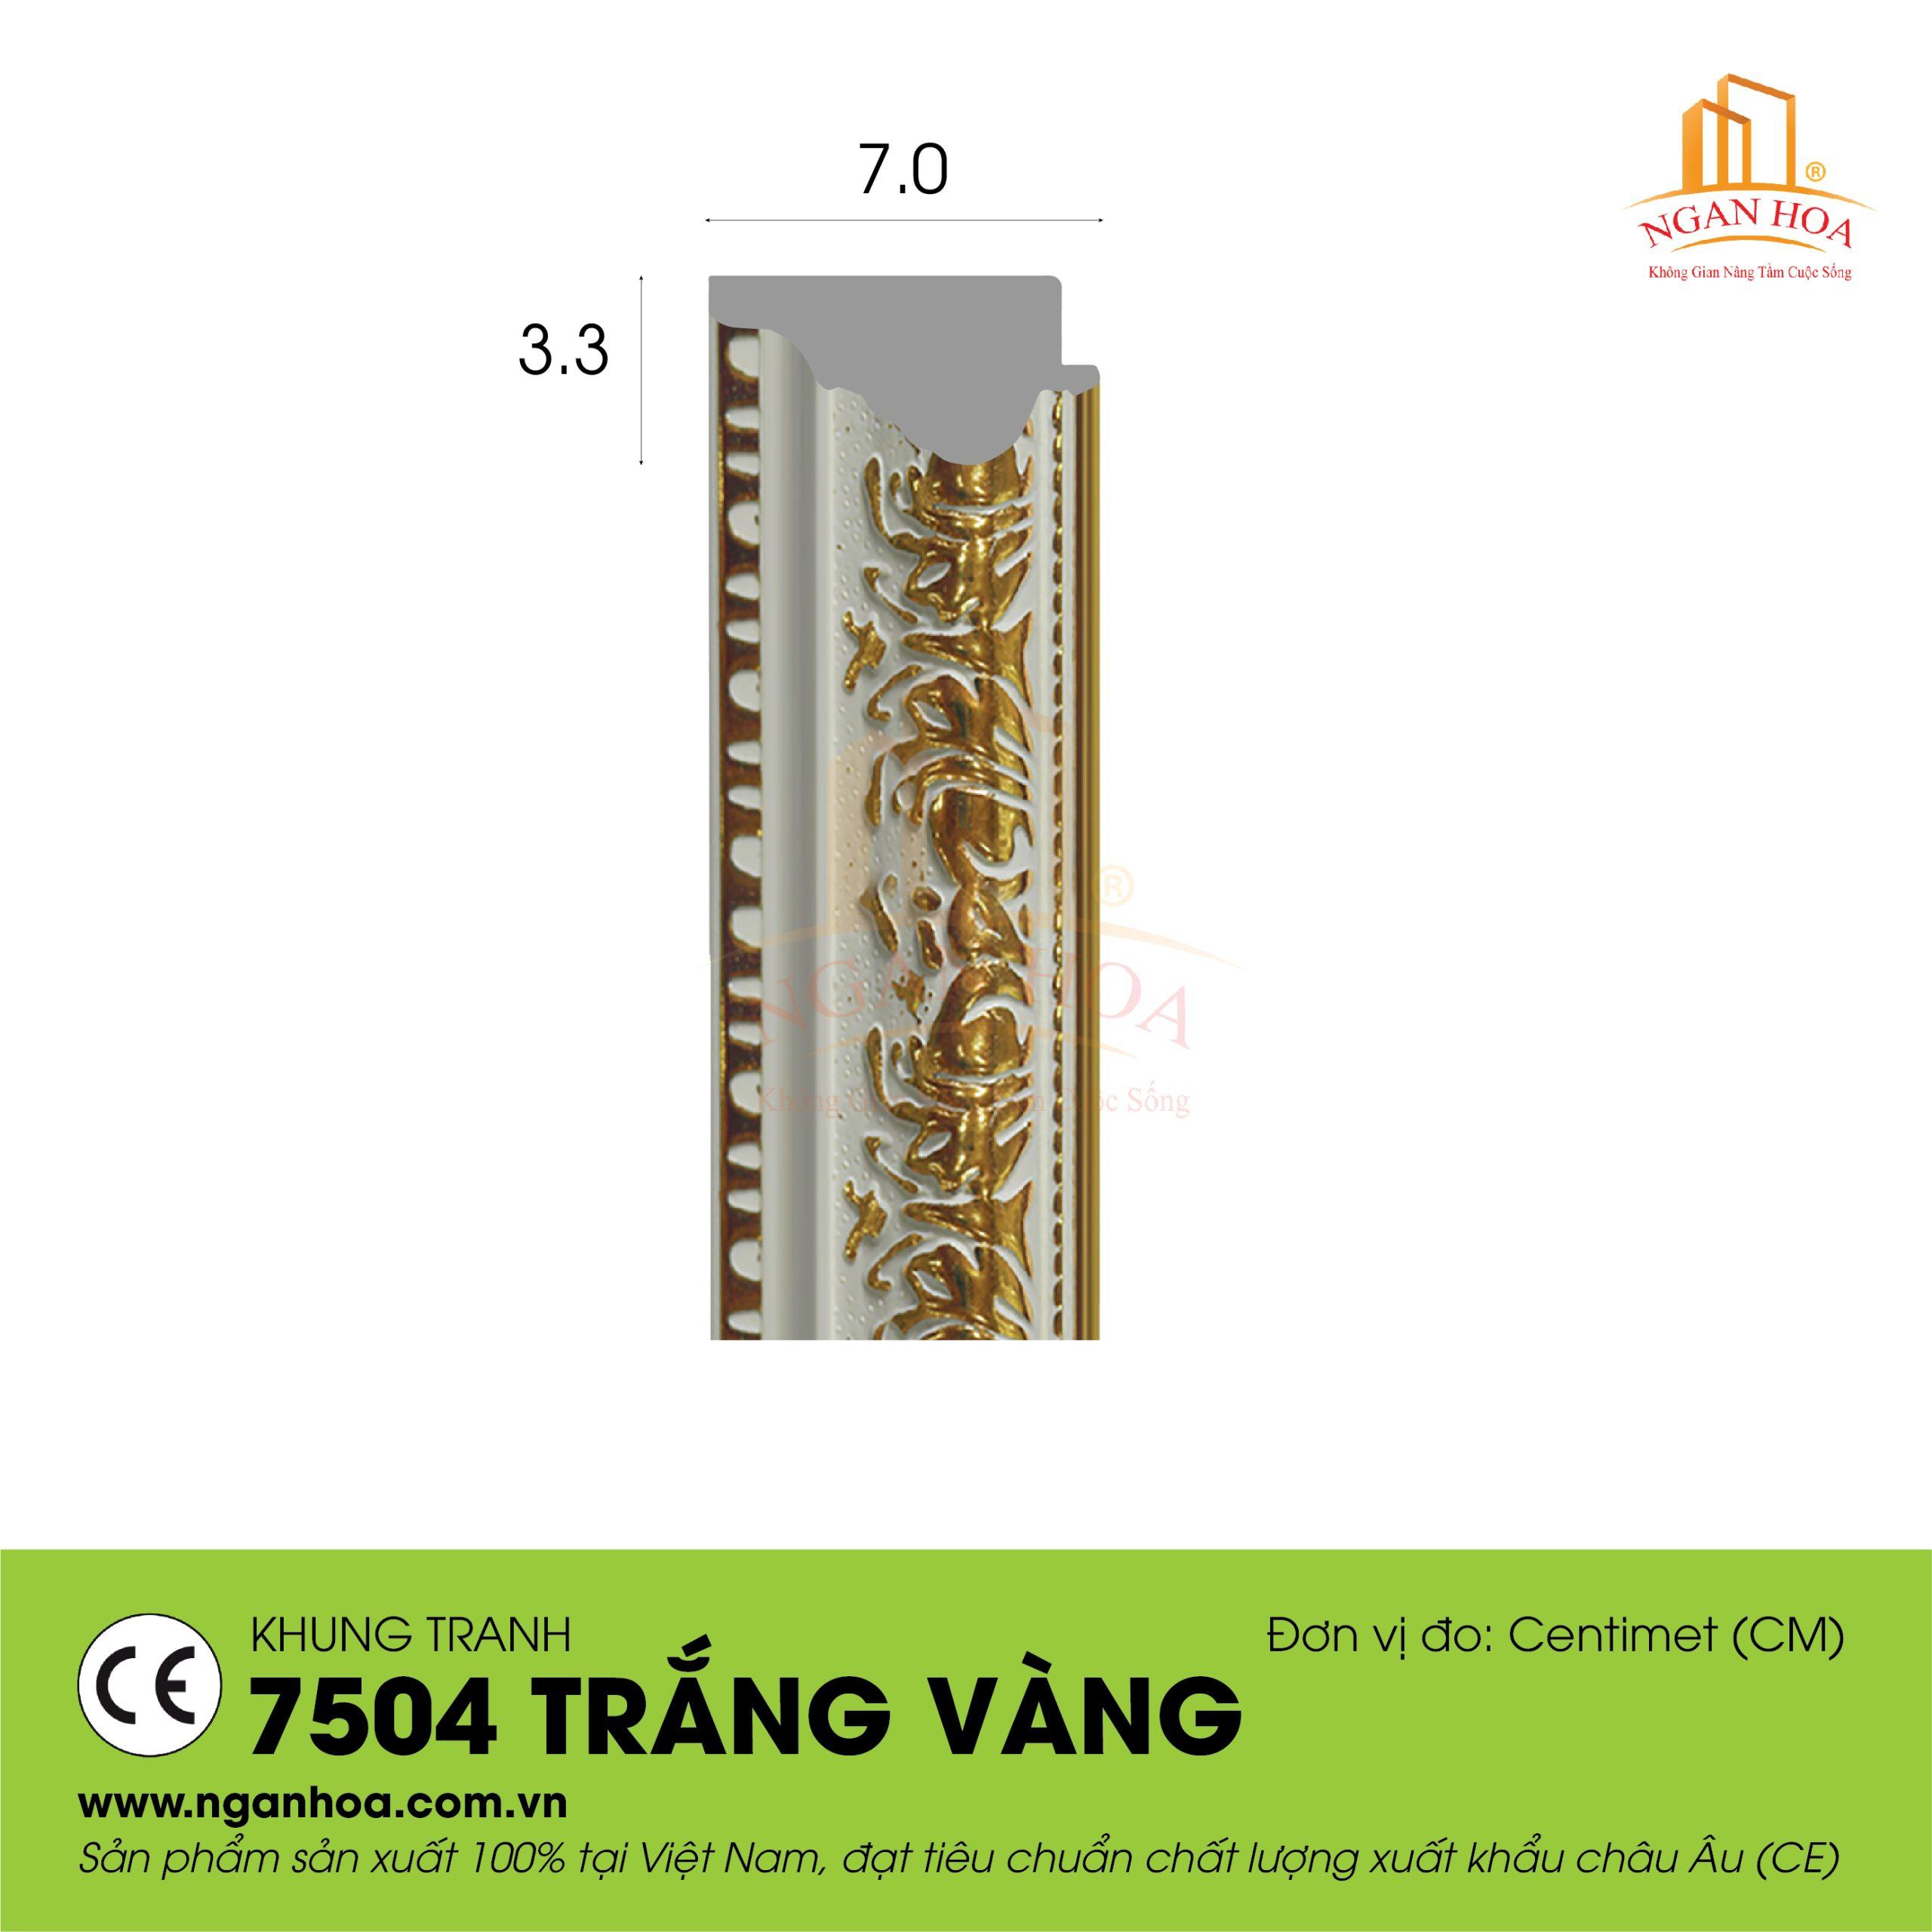 KT 7504 Trang Vang 1 scaled